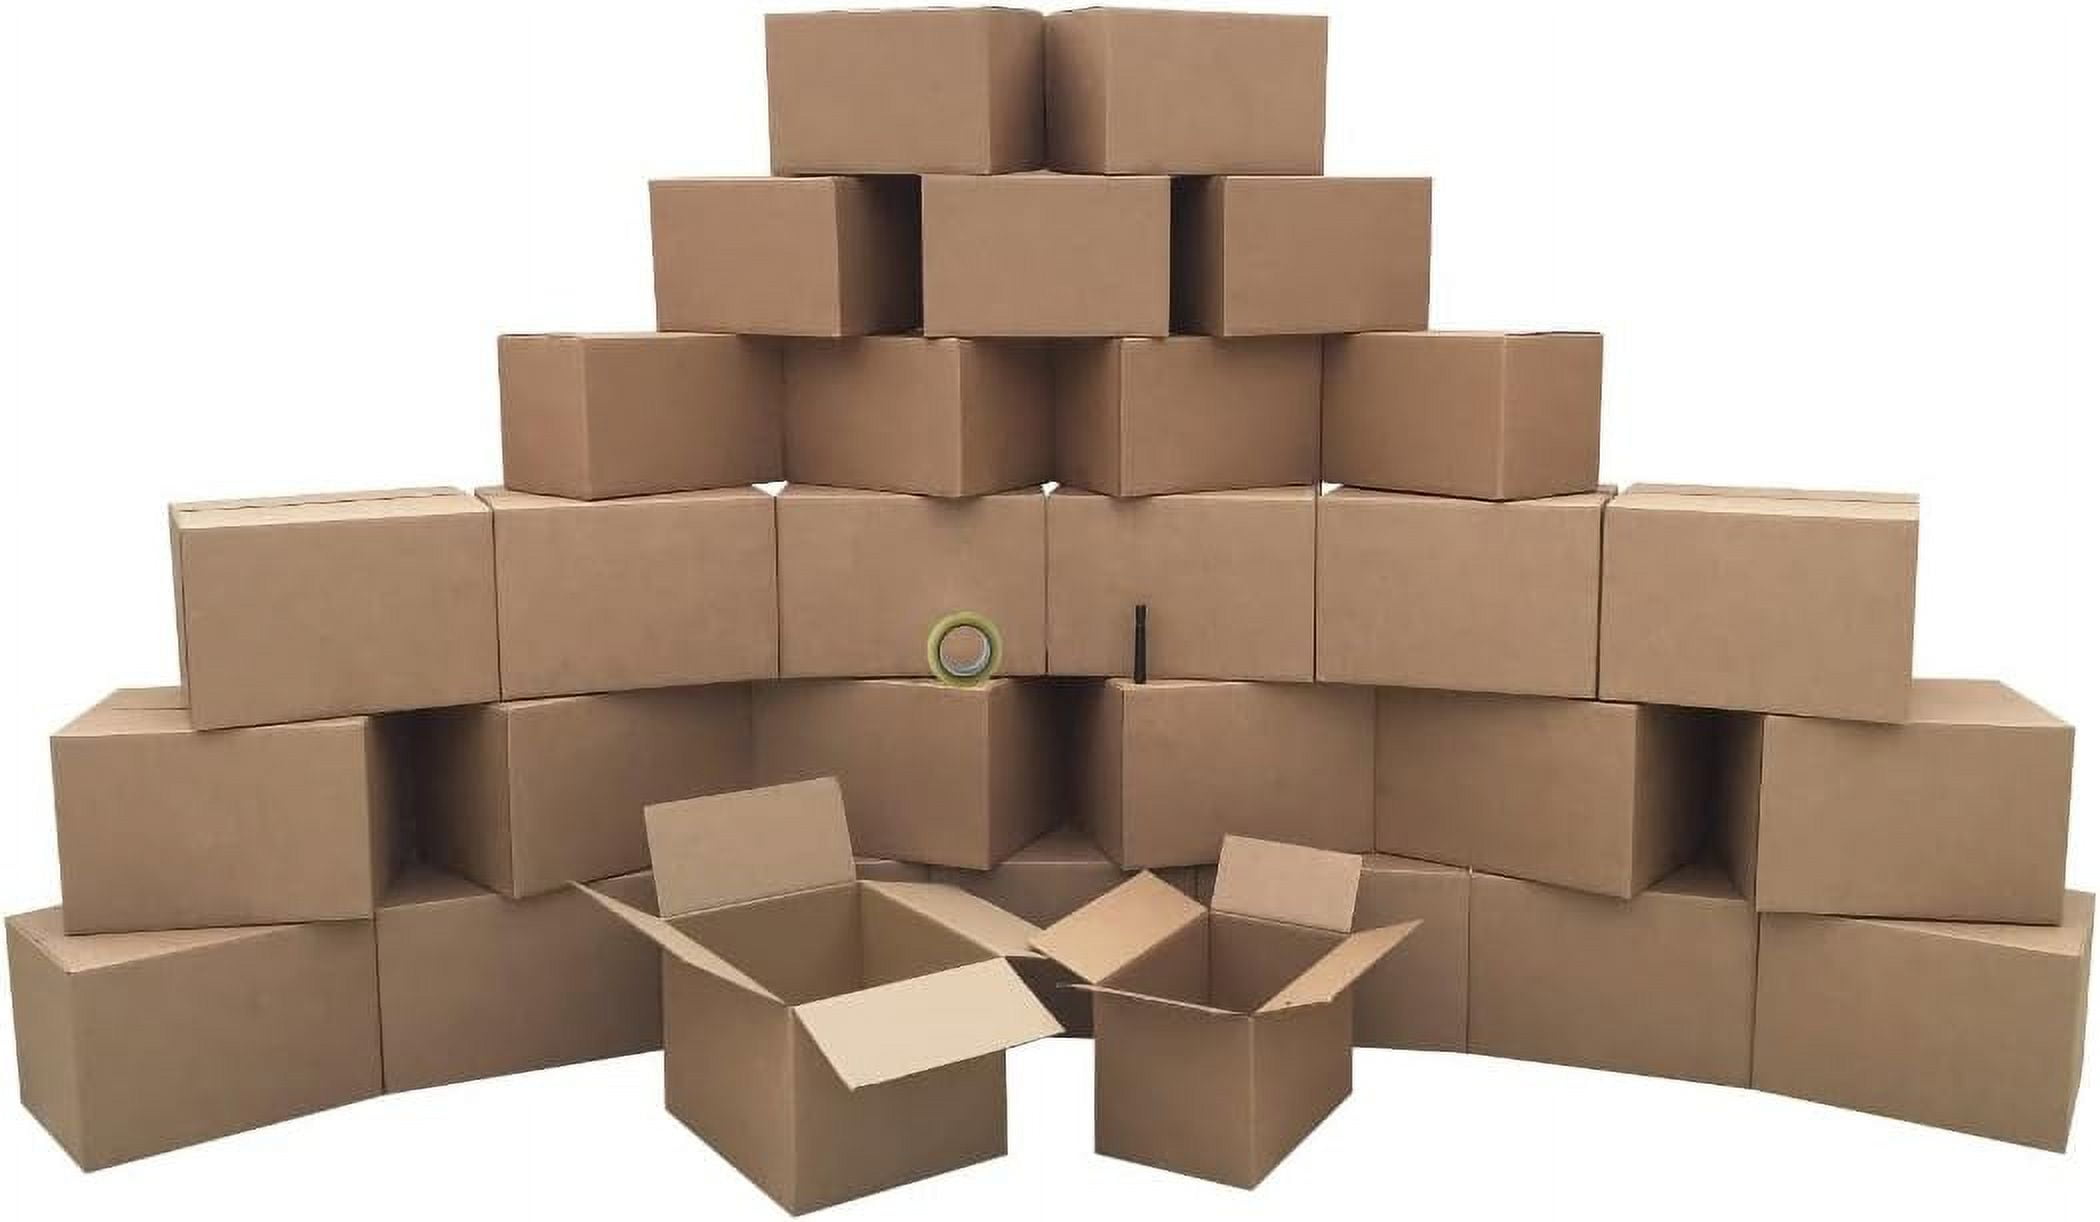  Bankers Box SmoothMove Classic: cajas de mudanza clásicas, sin  cinta, asas de fácil transporte, pequeñas, 15 x 12 x 10 pulgadas, 10  unidades (7714901), color marrón. : Productos de Oficina